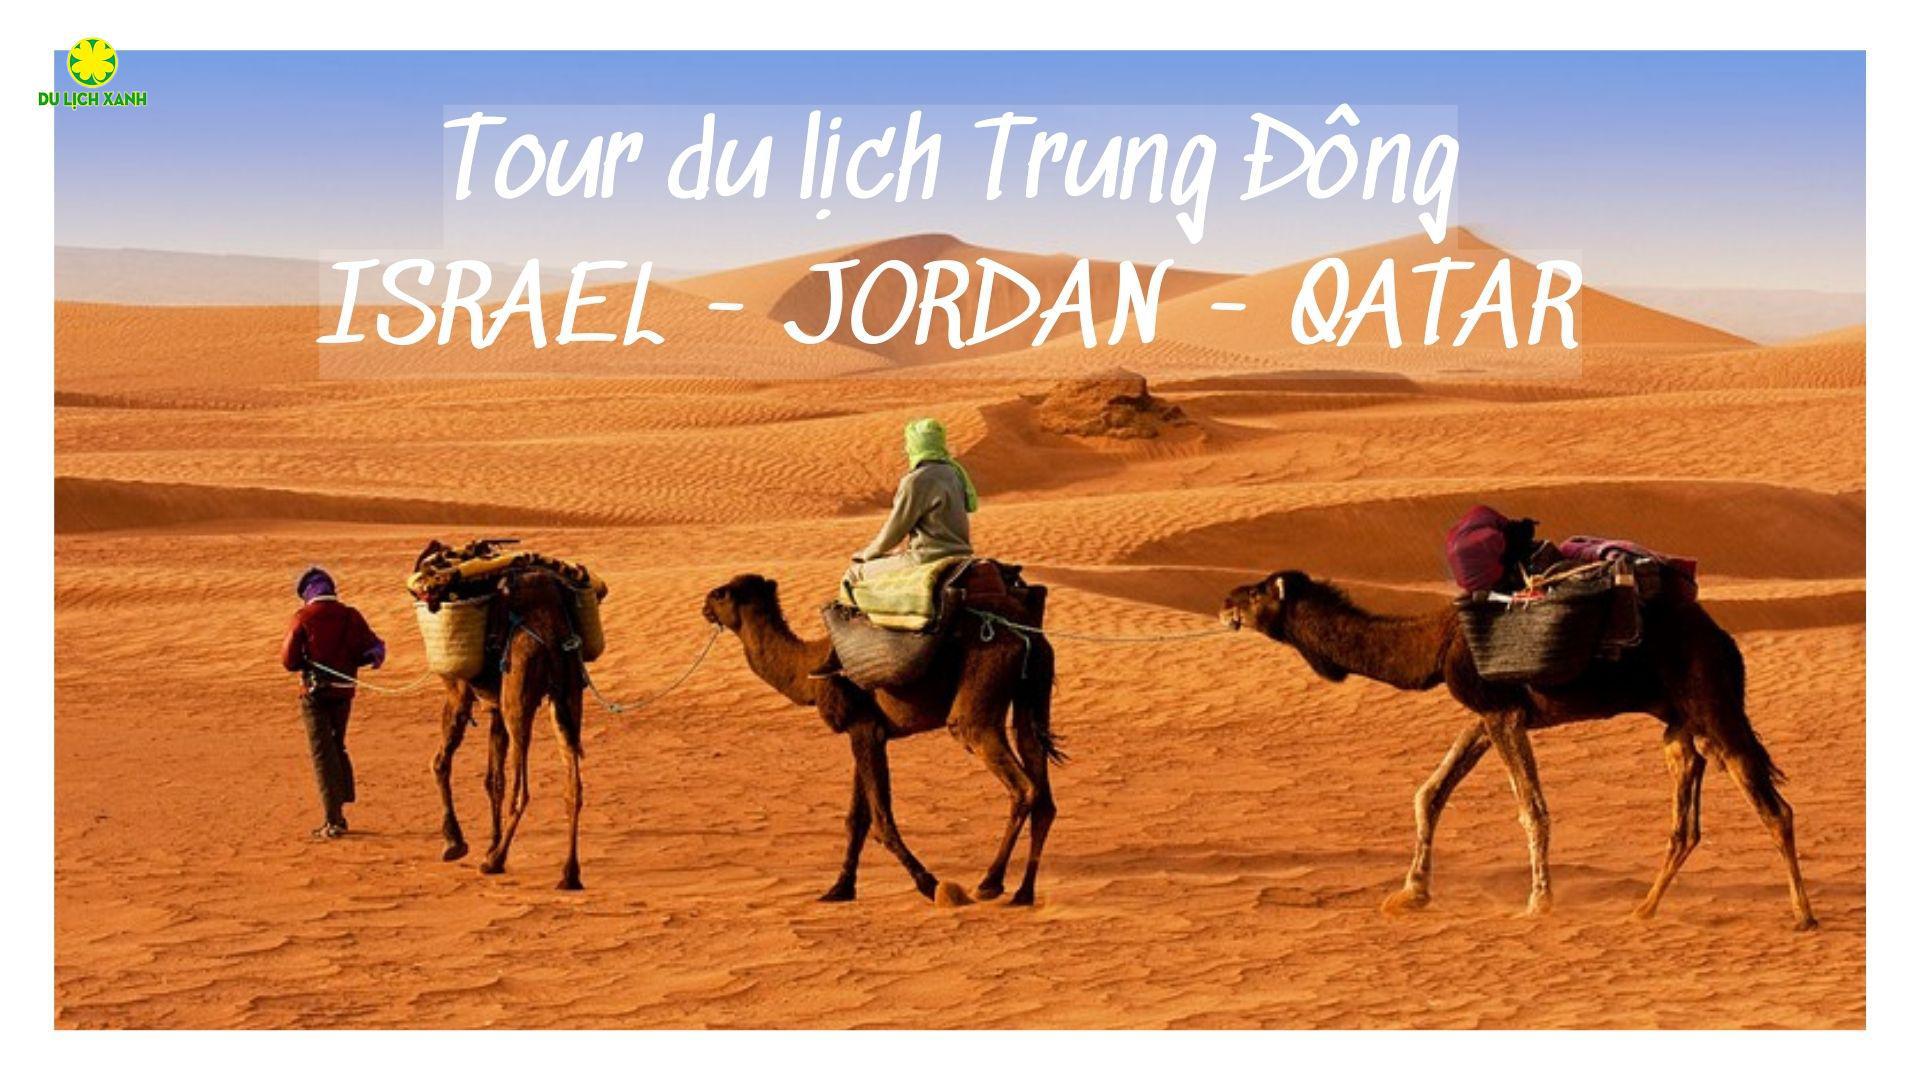 Tour du lịch Trung Đông: ISRAEL - JORDAN - QATAR 11 ngày